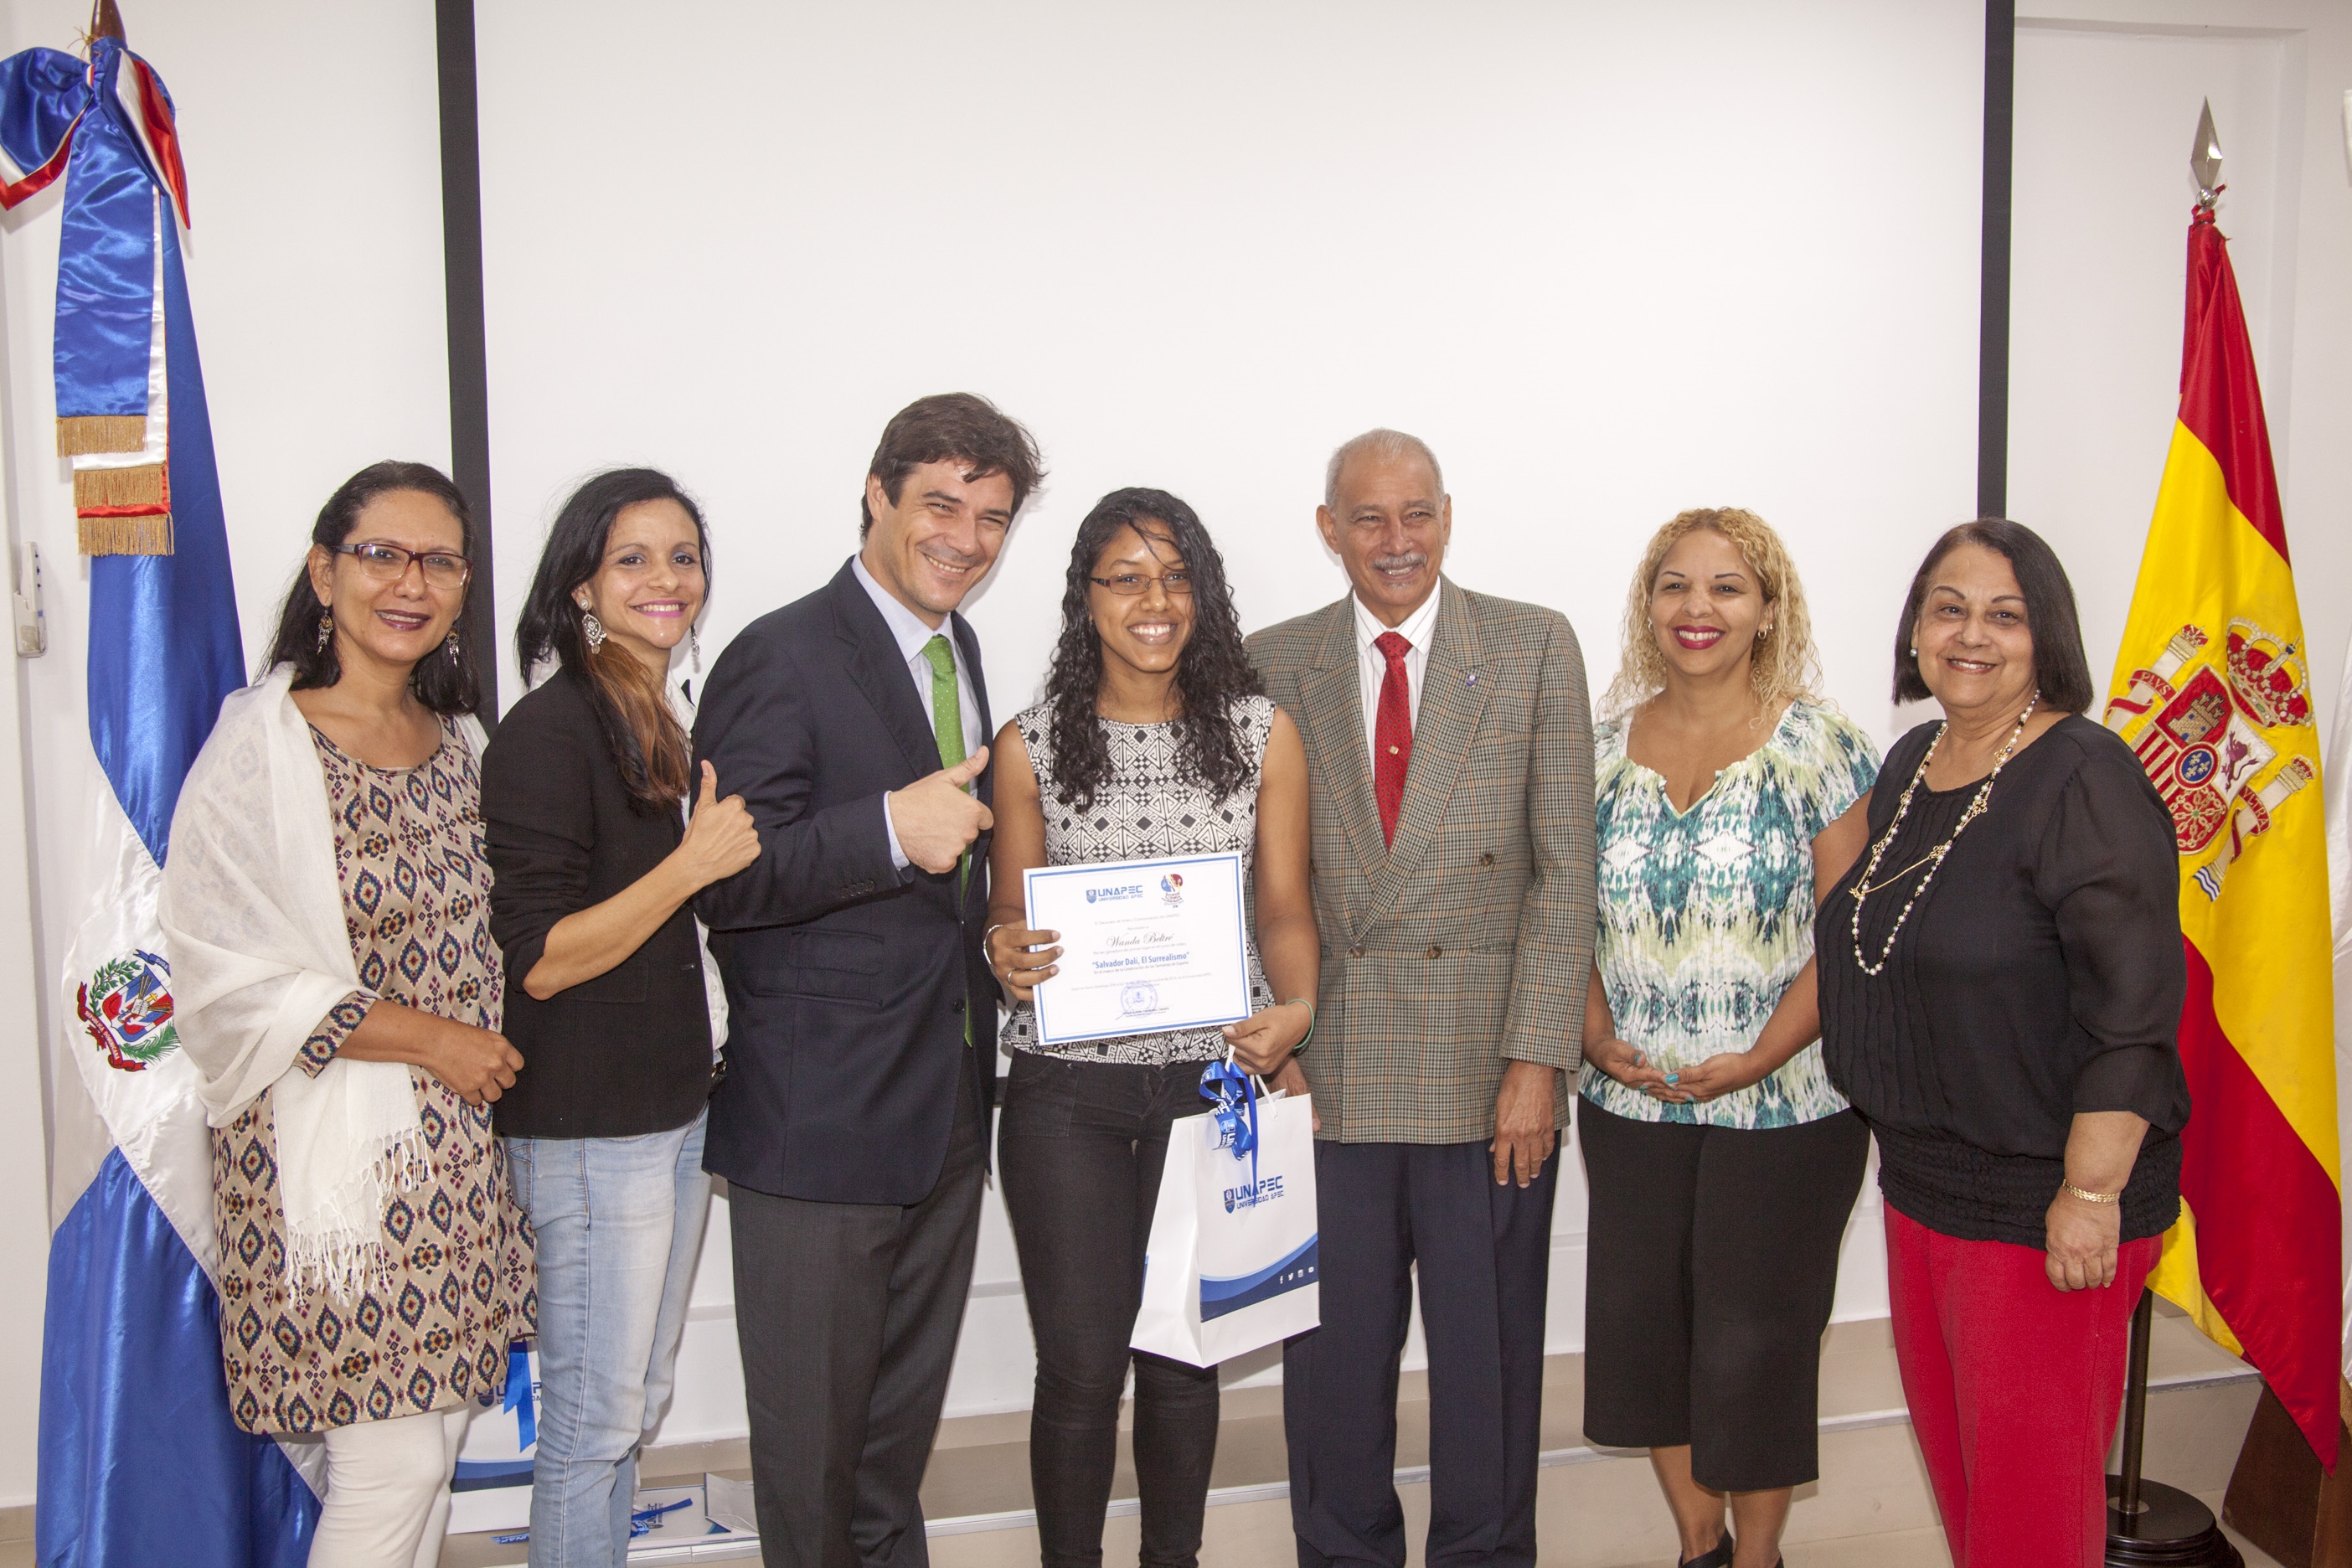 Nuestras autoridades y representante de la Embajada Española entregan premio a ganadora del primer lugar, Wanda Beltré.